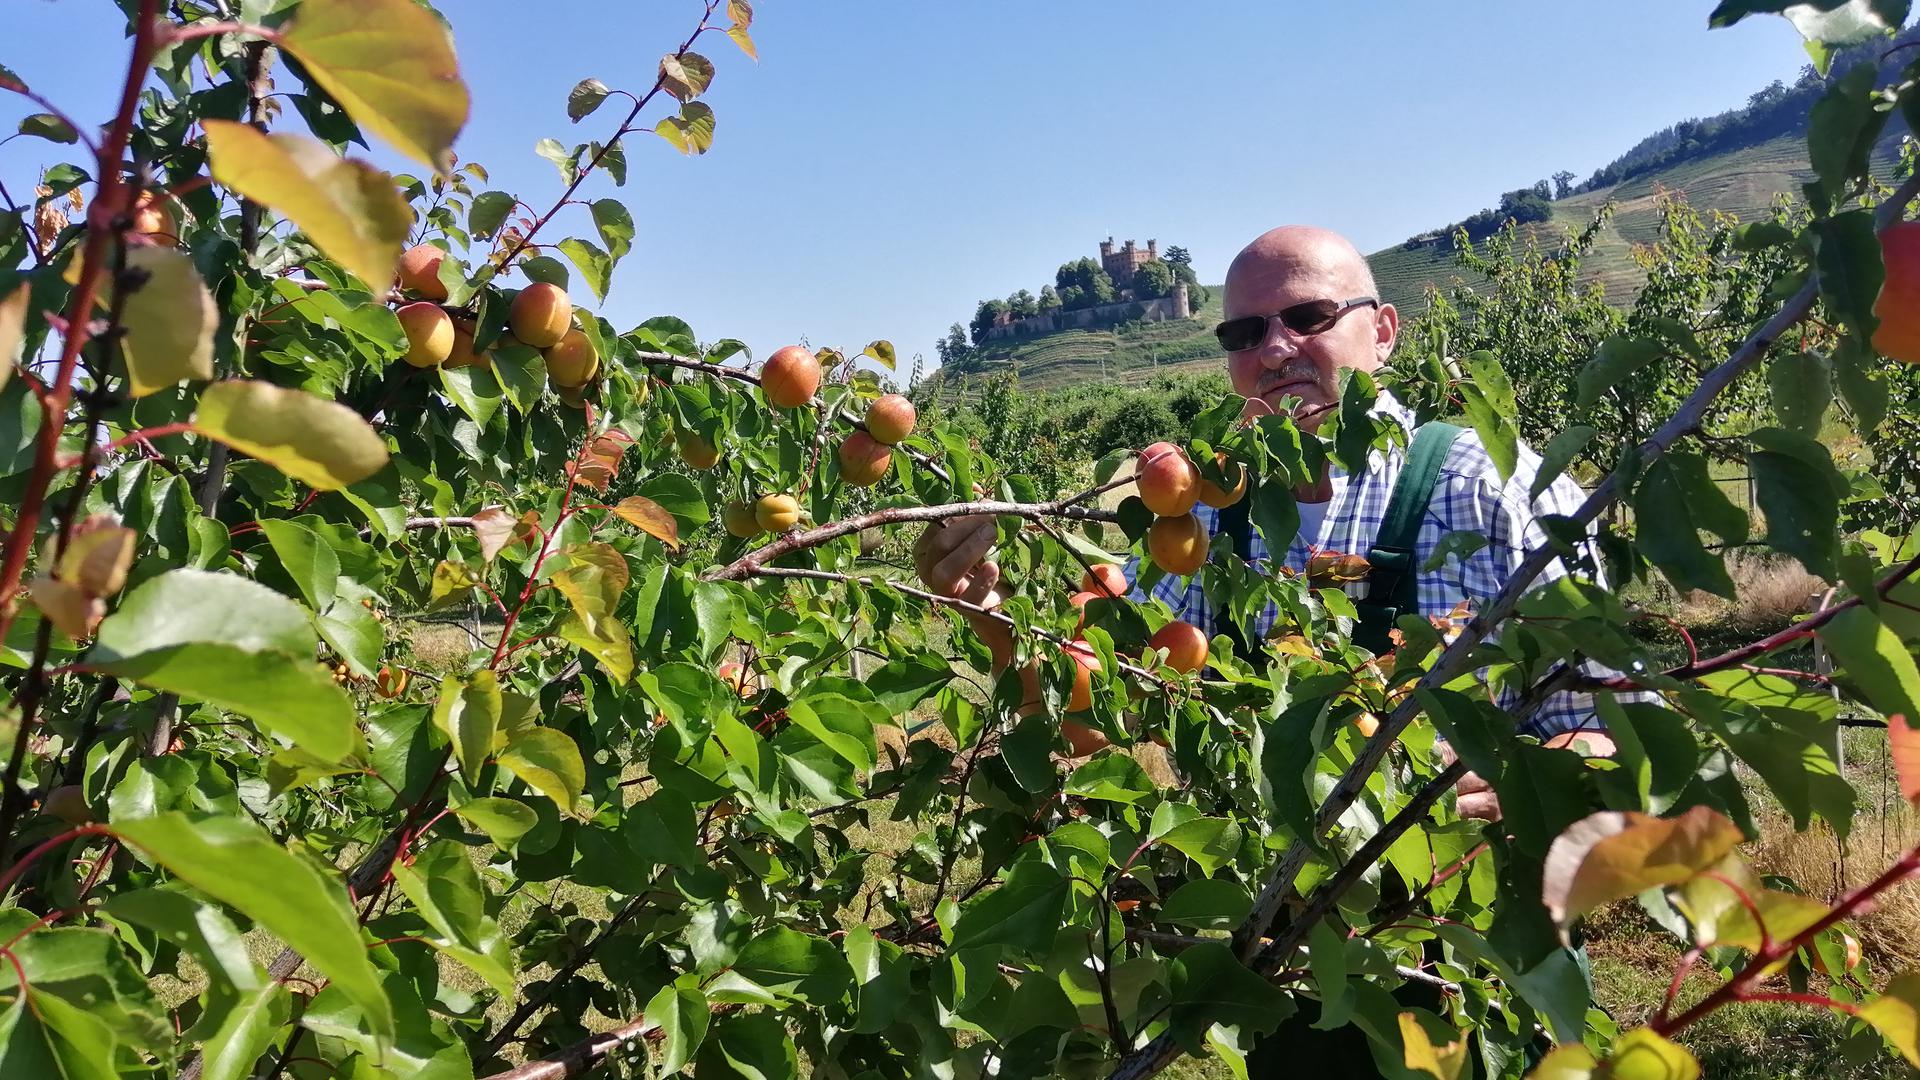 Für den Ortenberger Obstbauer Erich Kiefer beginnt derzeit die Aprikosenernte